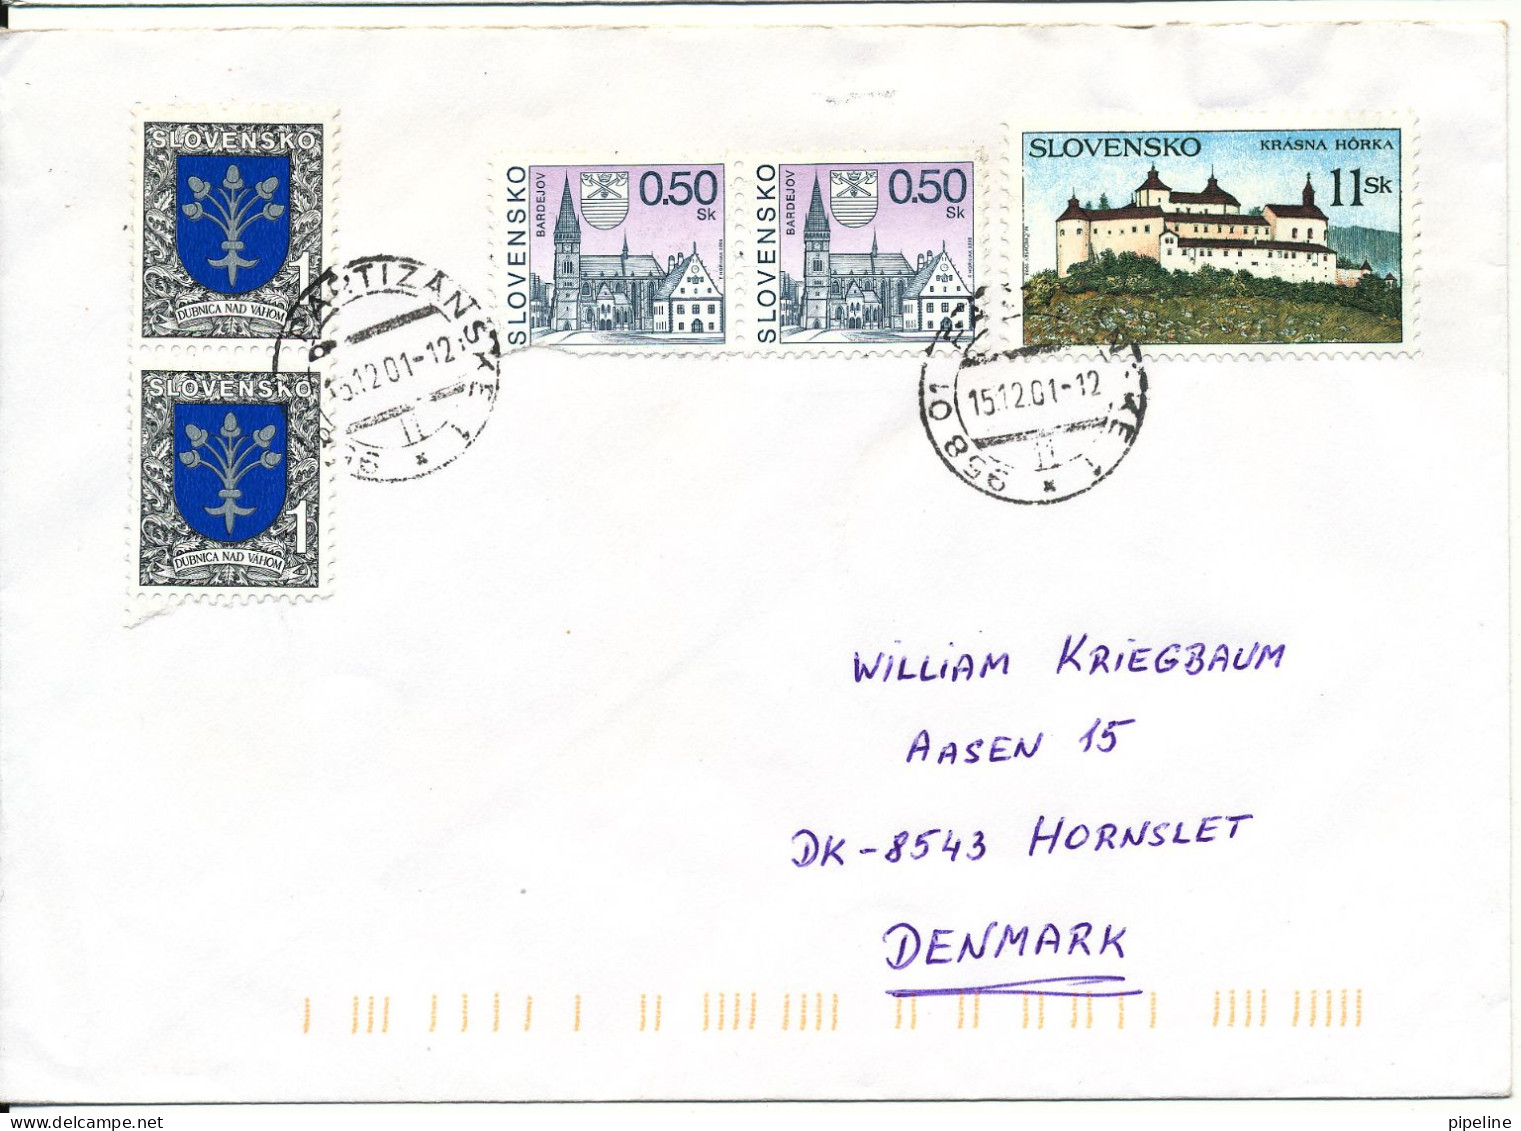 Slovakia Nice Cover Sent To Denmark 15-12-2001 - Briefe U. Dokumente